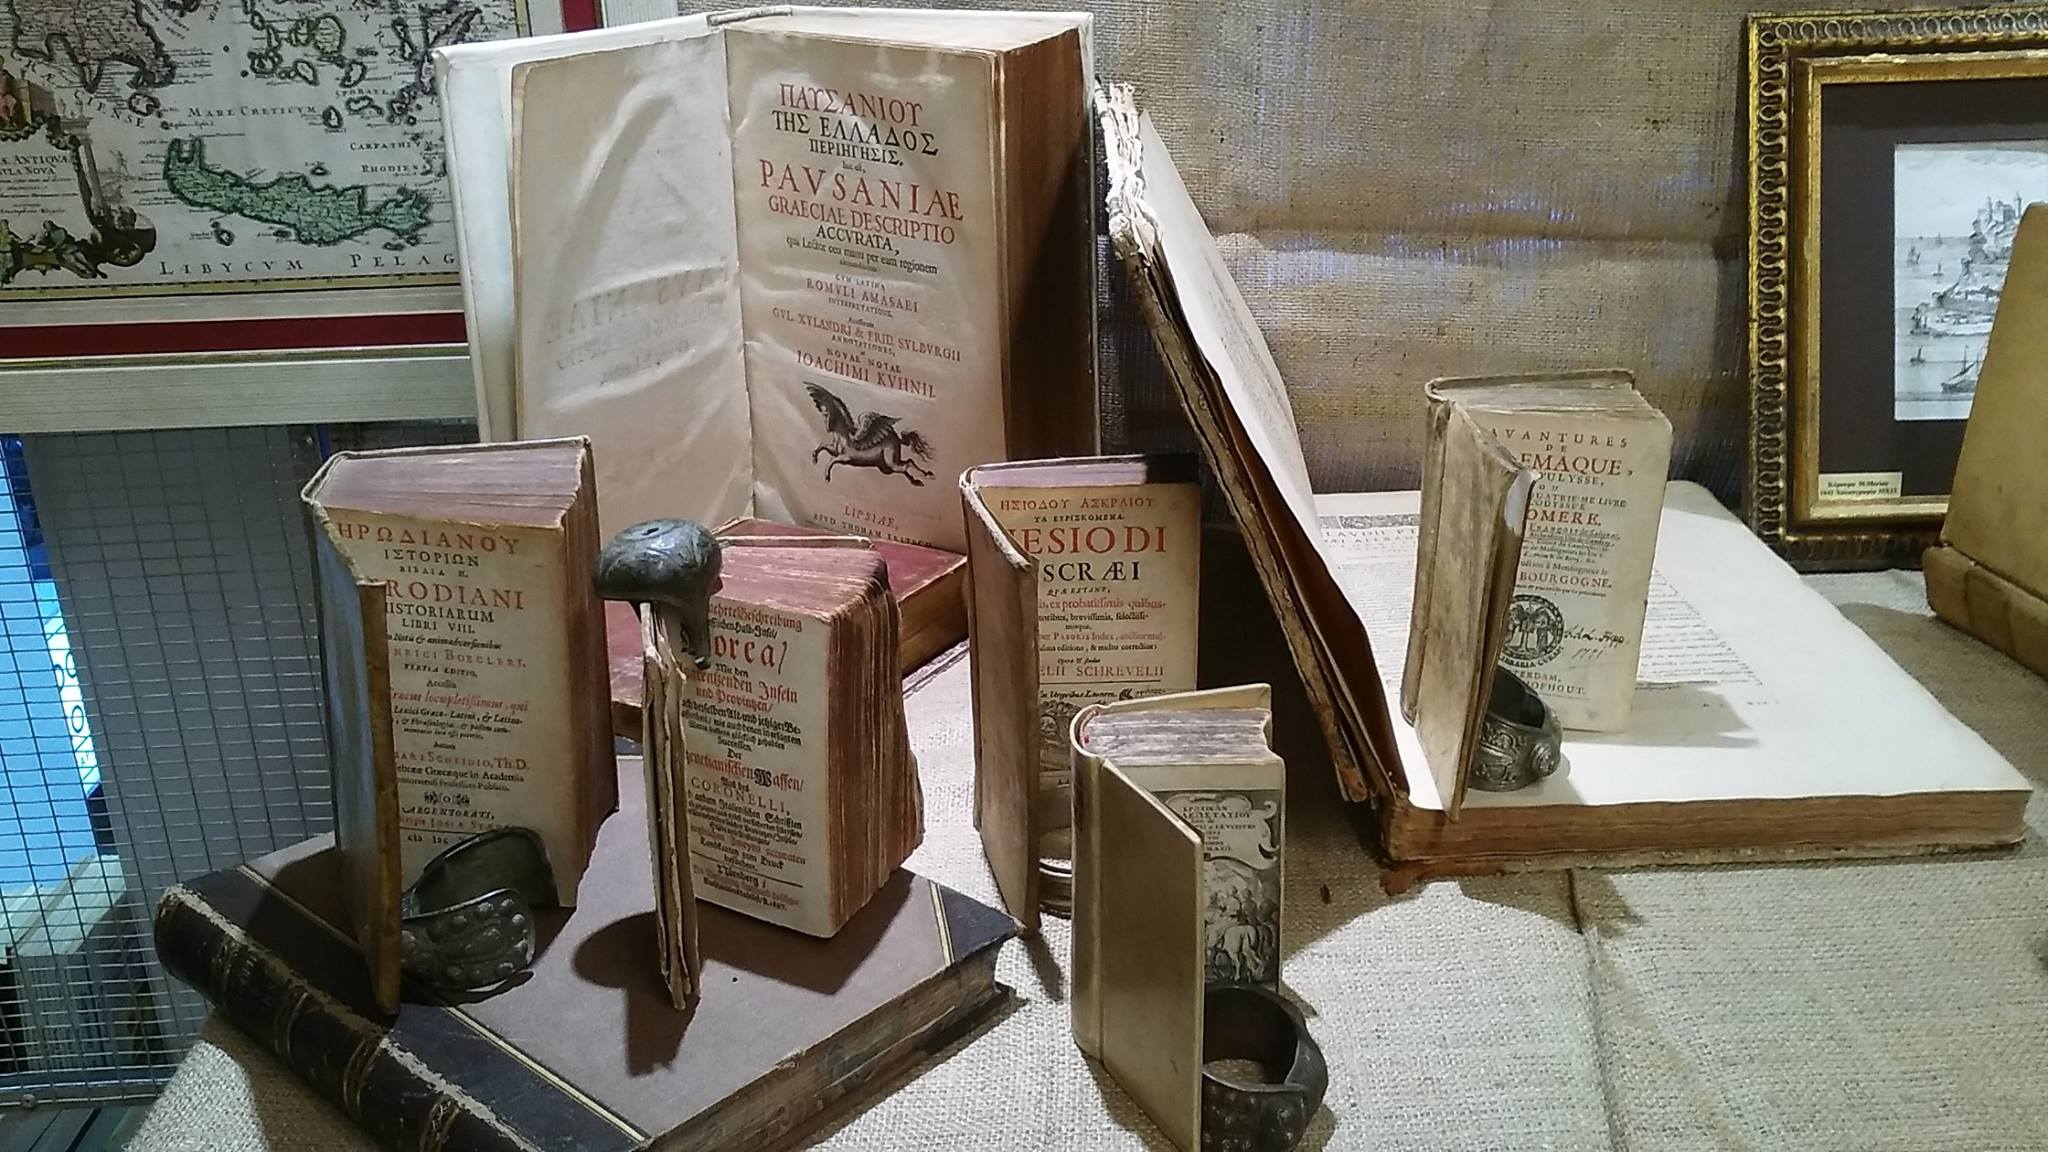 Καλαμάτα: Εντυπωσιακή εκθεση παλαιοτύπων από παλιά βιβλία και γκραβούρες του 15ου έως 17ου αιώνα